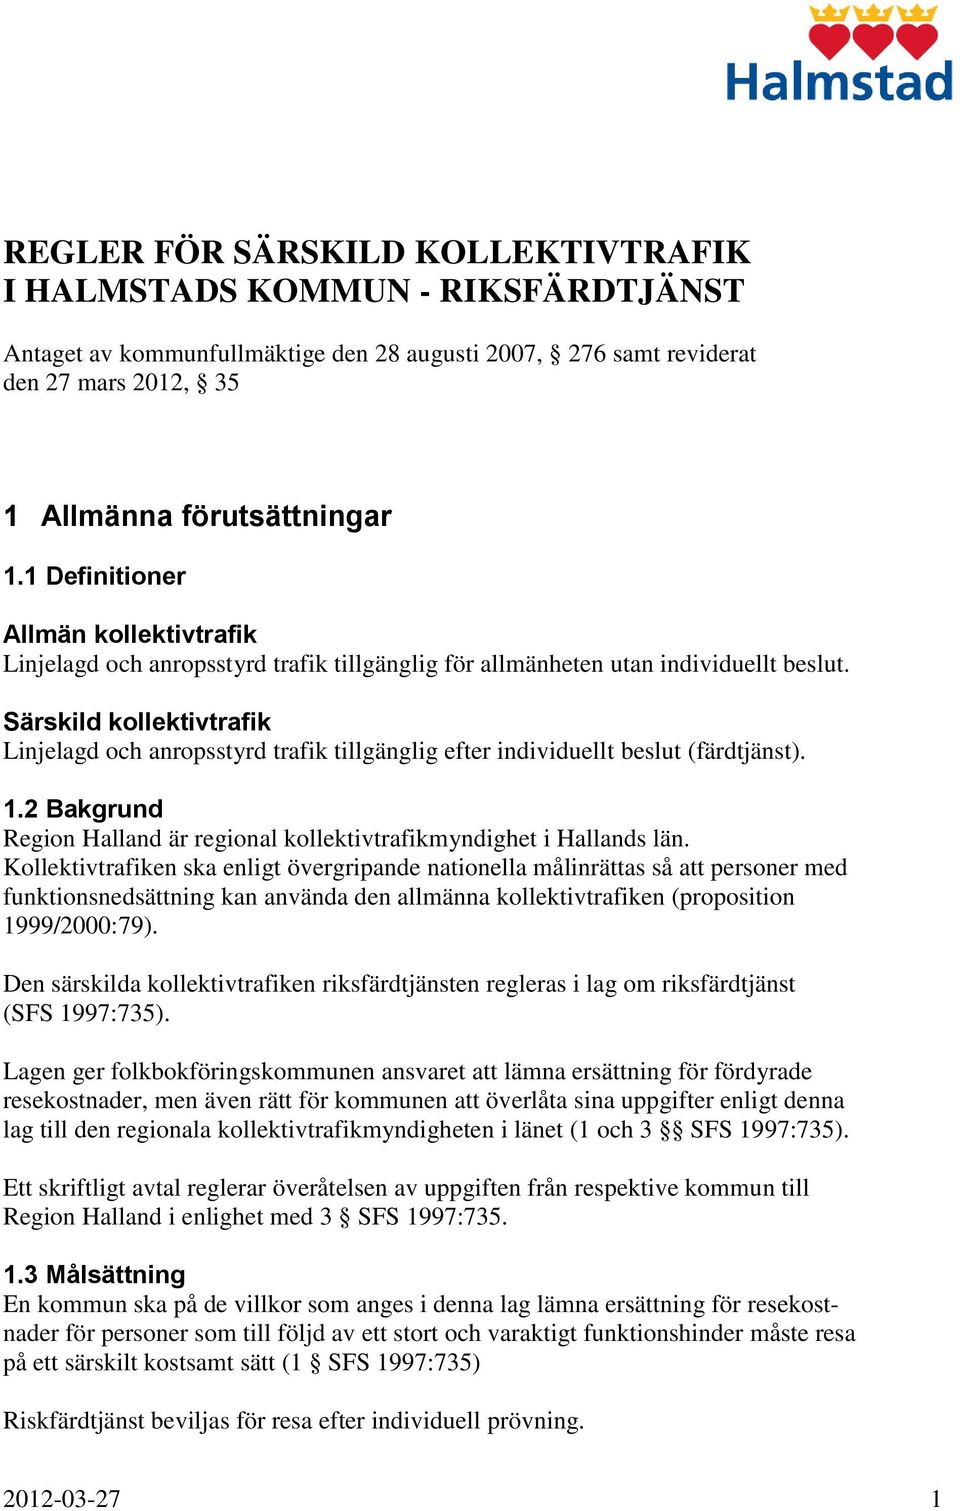 Särskild kollektivtrafik Linjelagd och anropsstyrd trafik tillgänglig efter individuellt beslut (färdtjänst). 1.2 Bakgrund Region Halland är regional kollektivtrafikmyndighet i Hallands län.